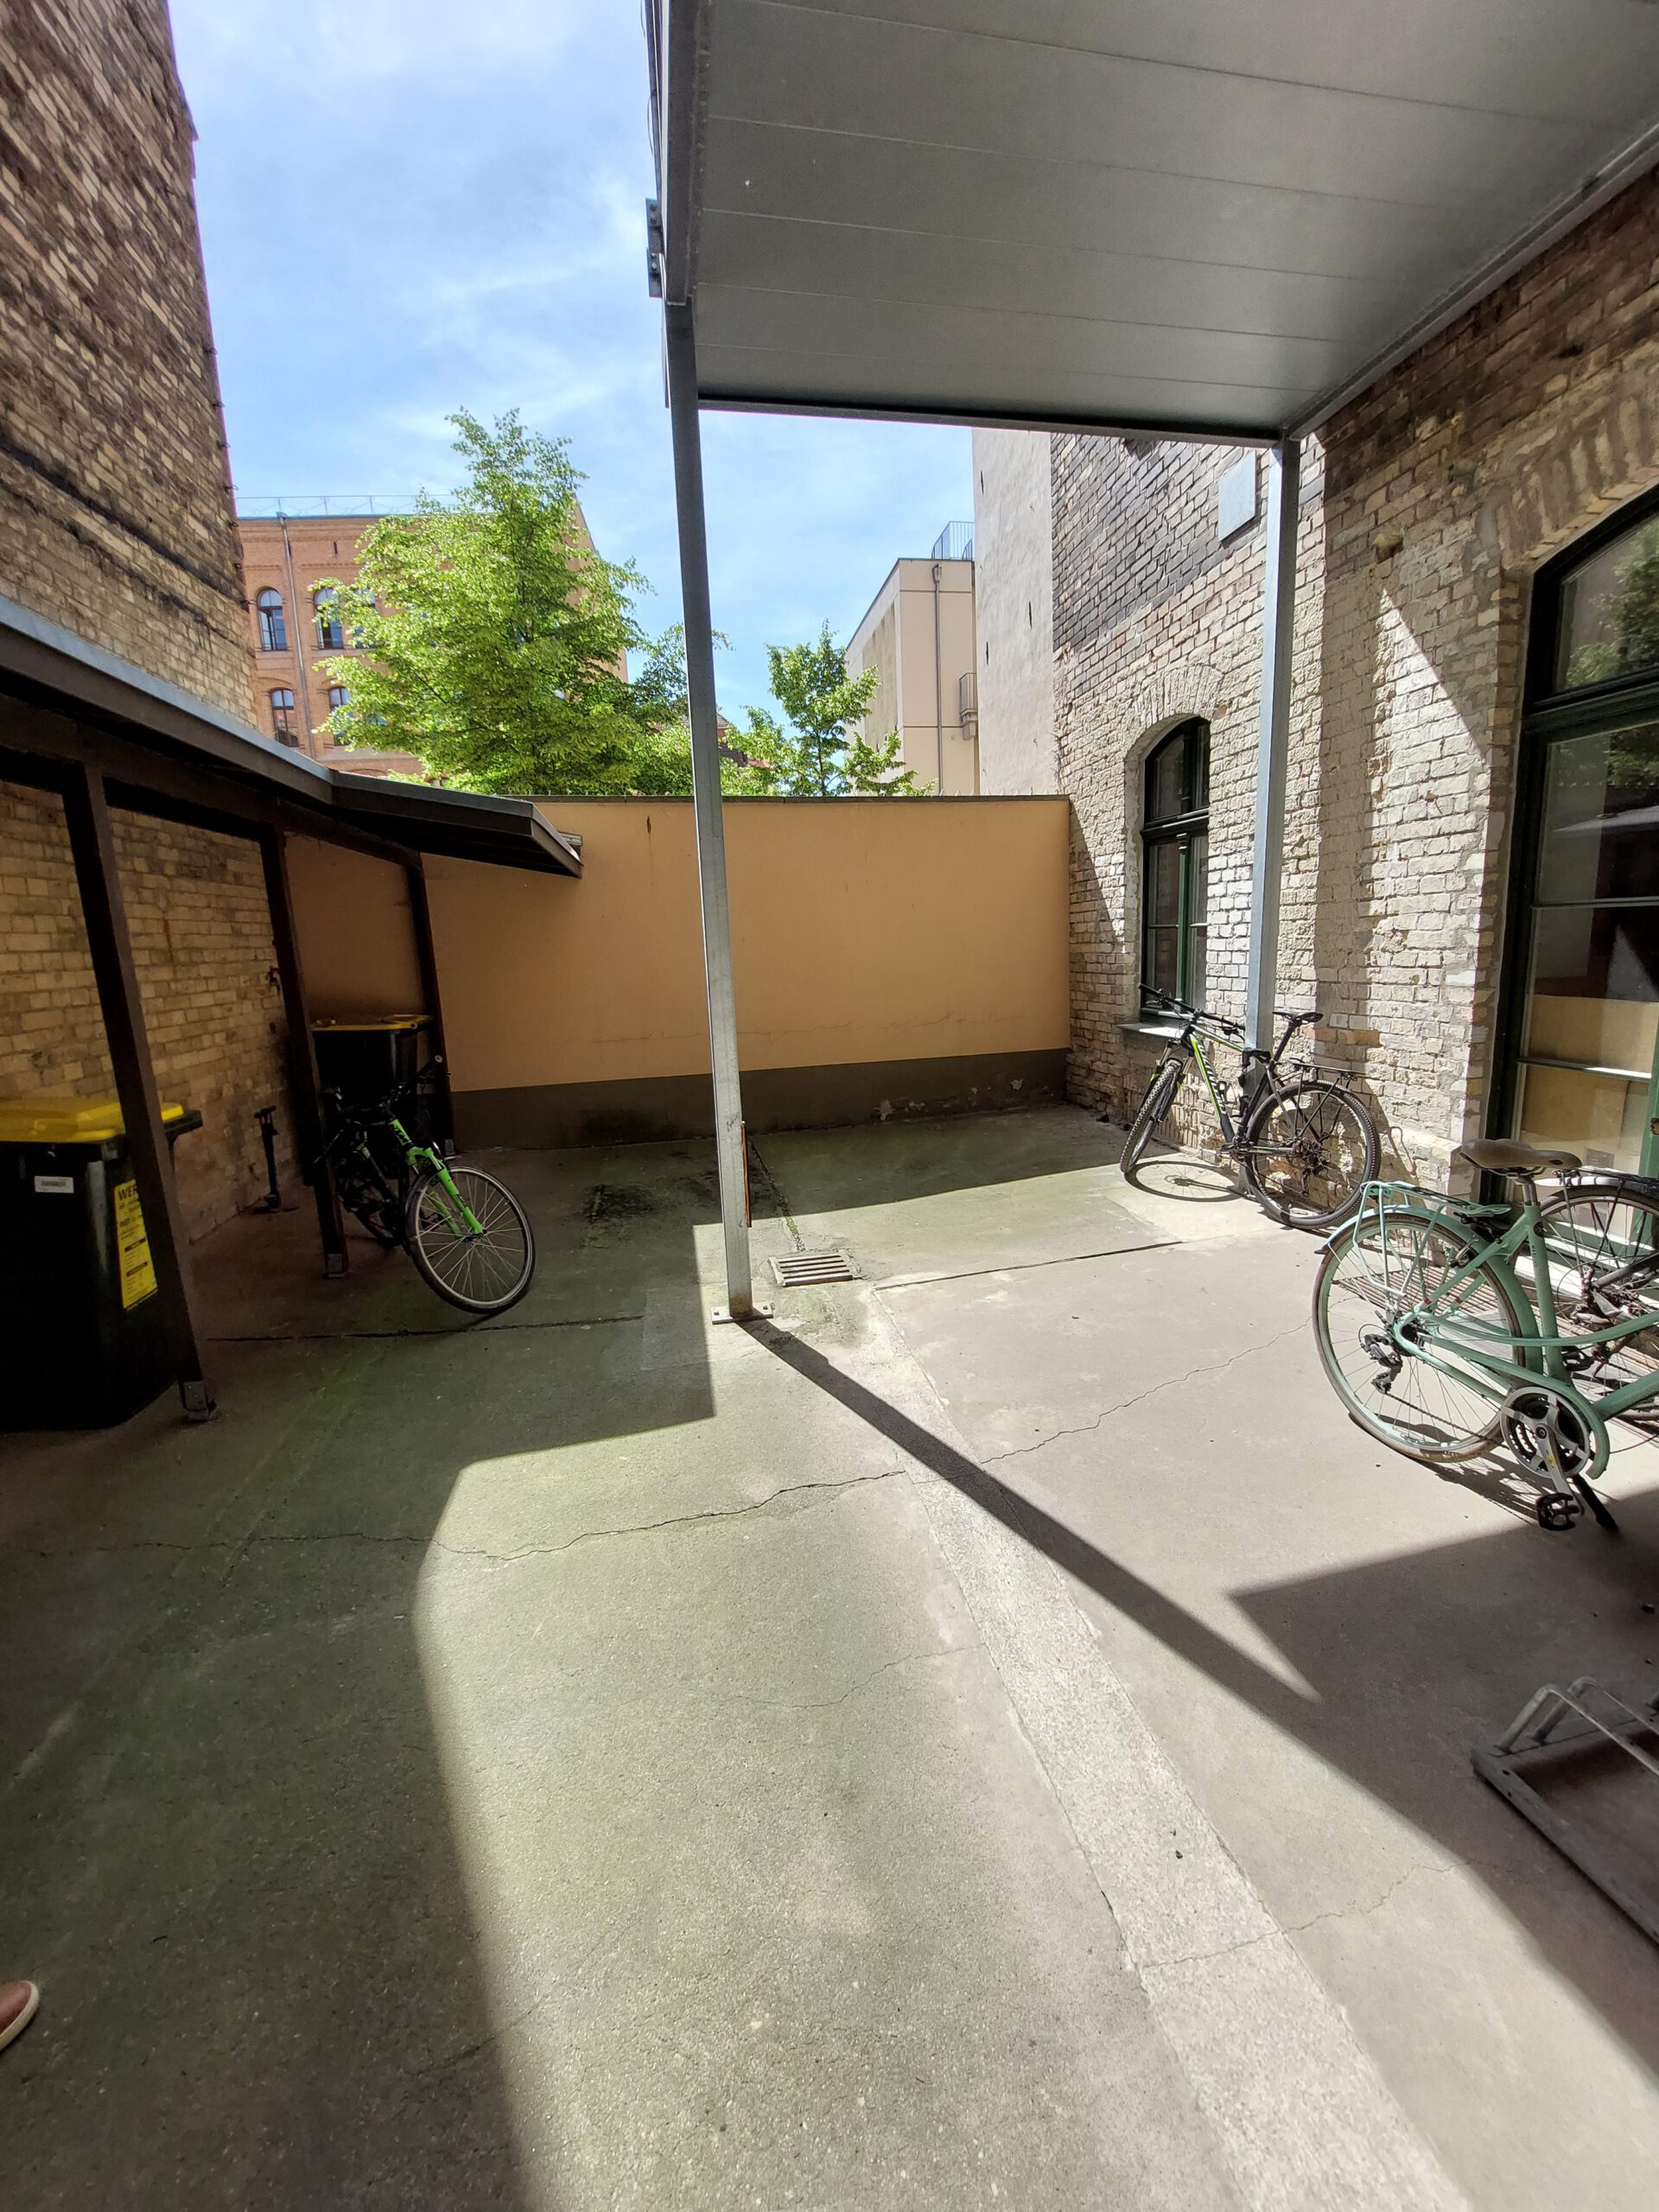 Wohn- und Geschäftshaus - Innenhof - Abstellmöglichkeit für Fahrräder